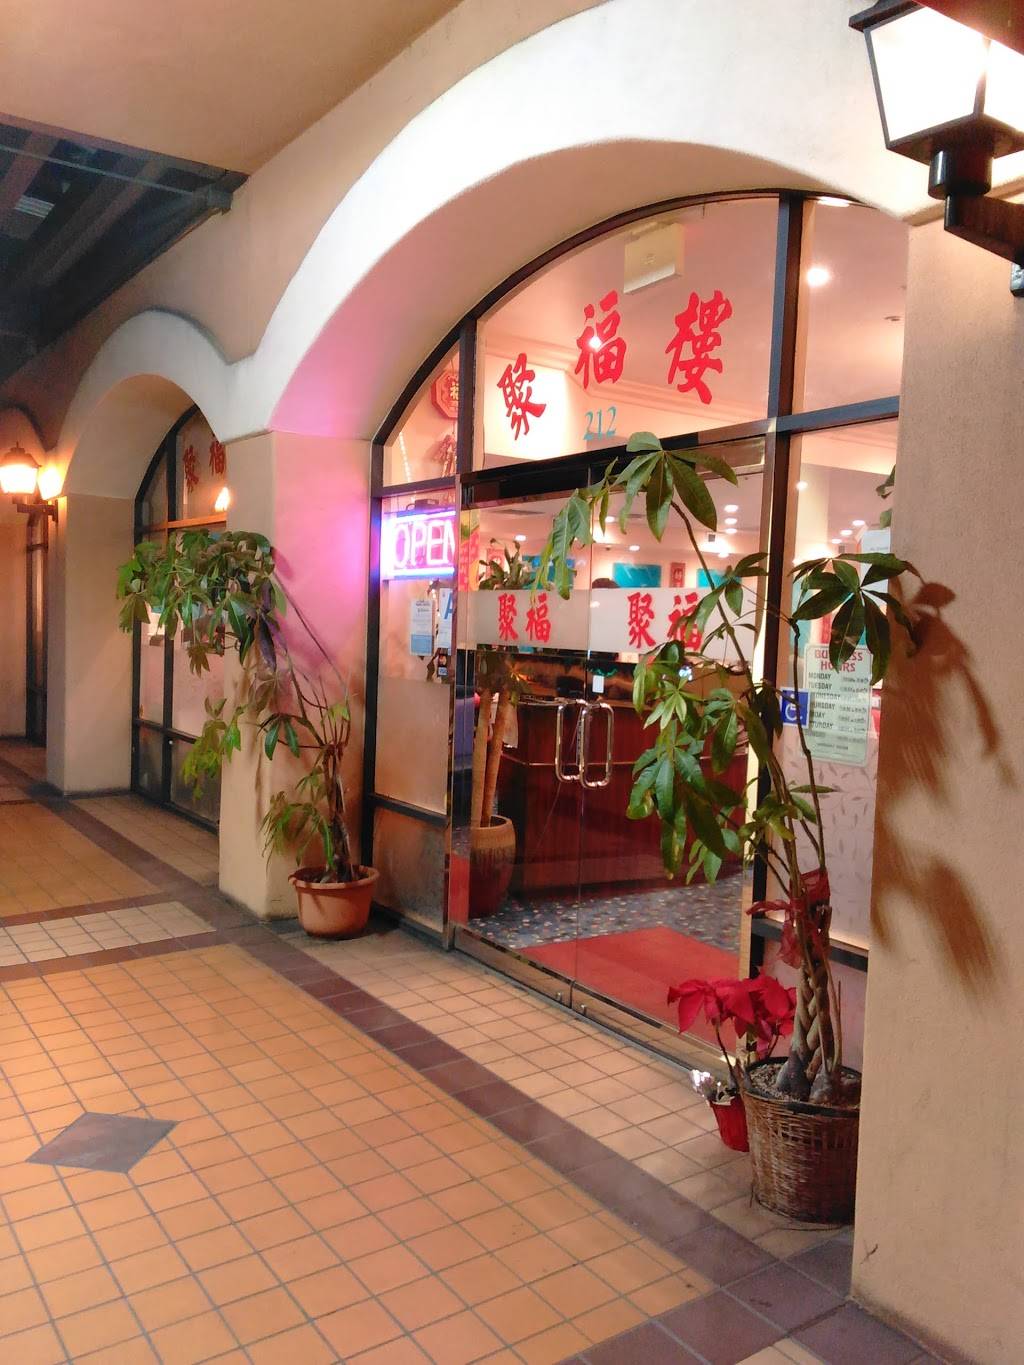 Shanghai Restaurant | restaurant | 140 W Valley Blvd #212, San Gabriel, CA 91776, USA | 6262880991 OR +1 626-288-0991